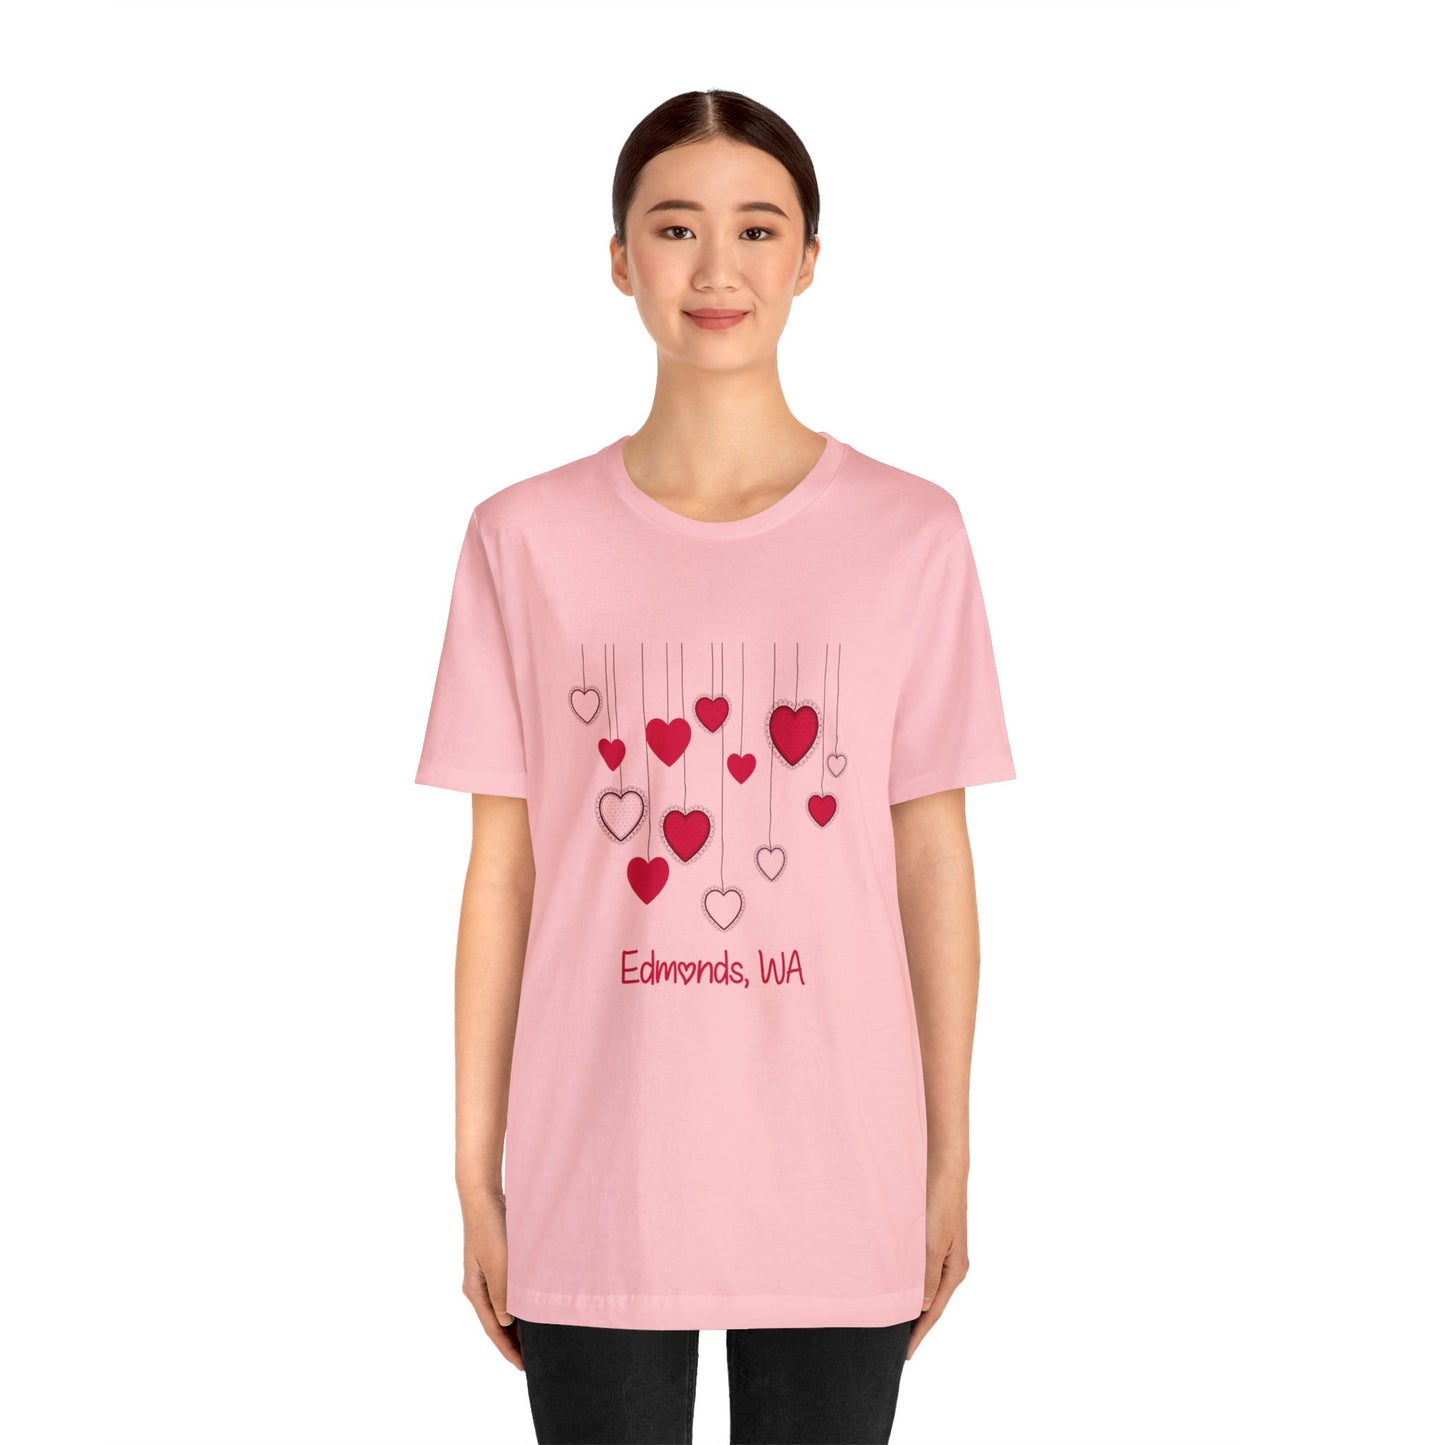 Edmonds Love T-shirt